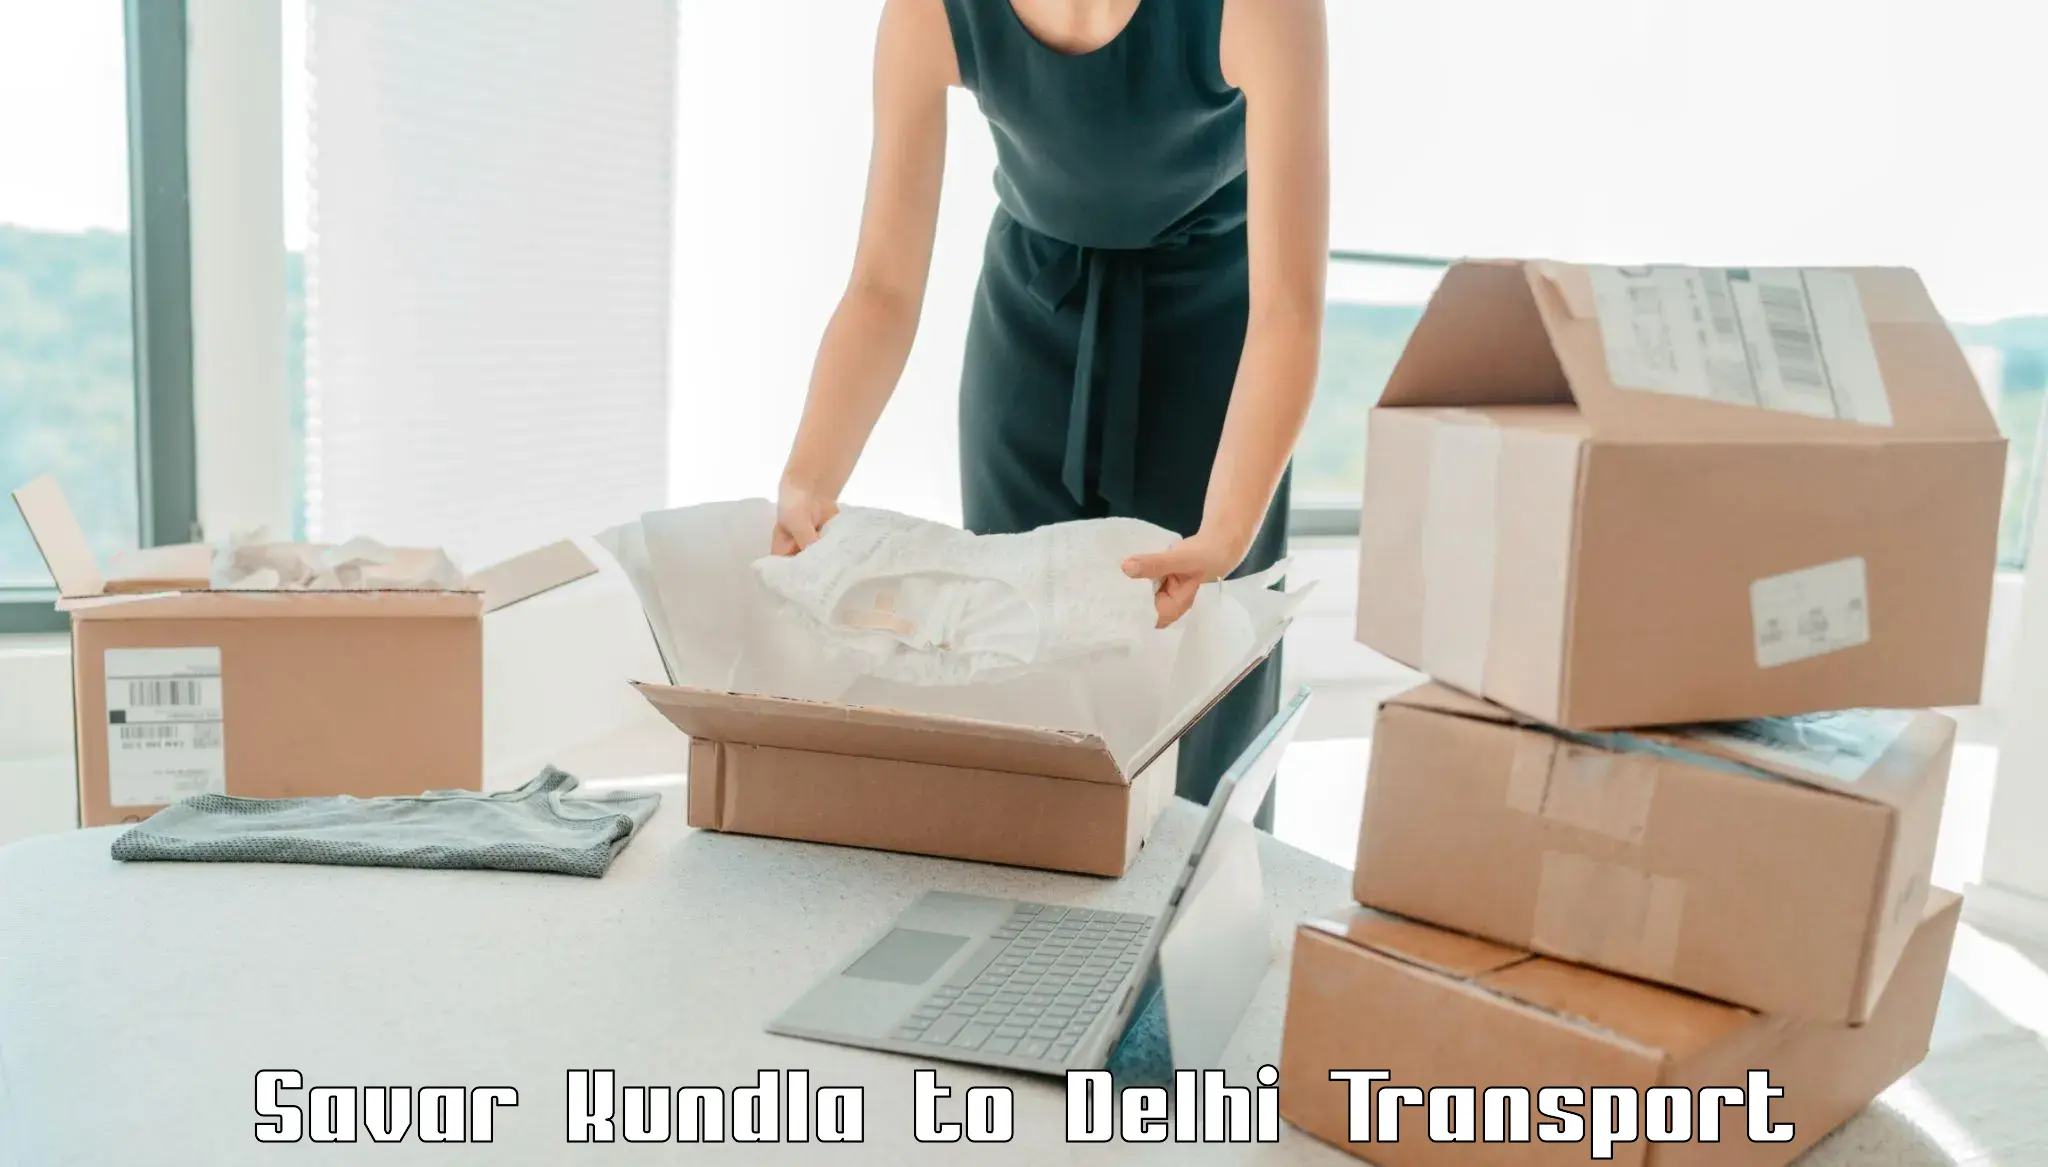 Daily parcel service transport in Savar Kundla to Delhi Technological University DTU